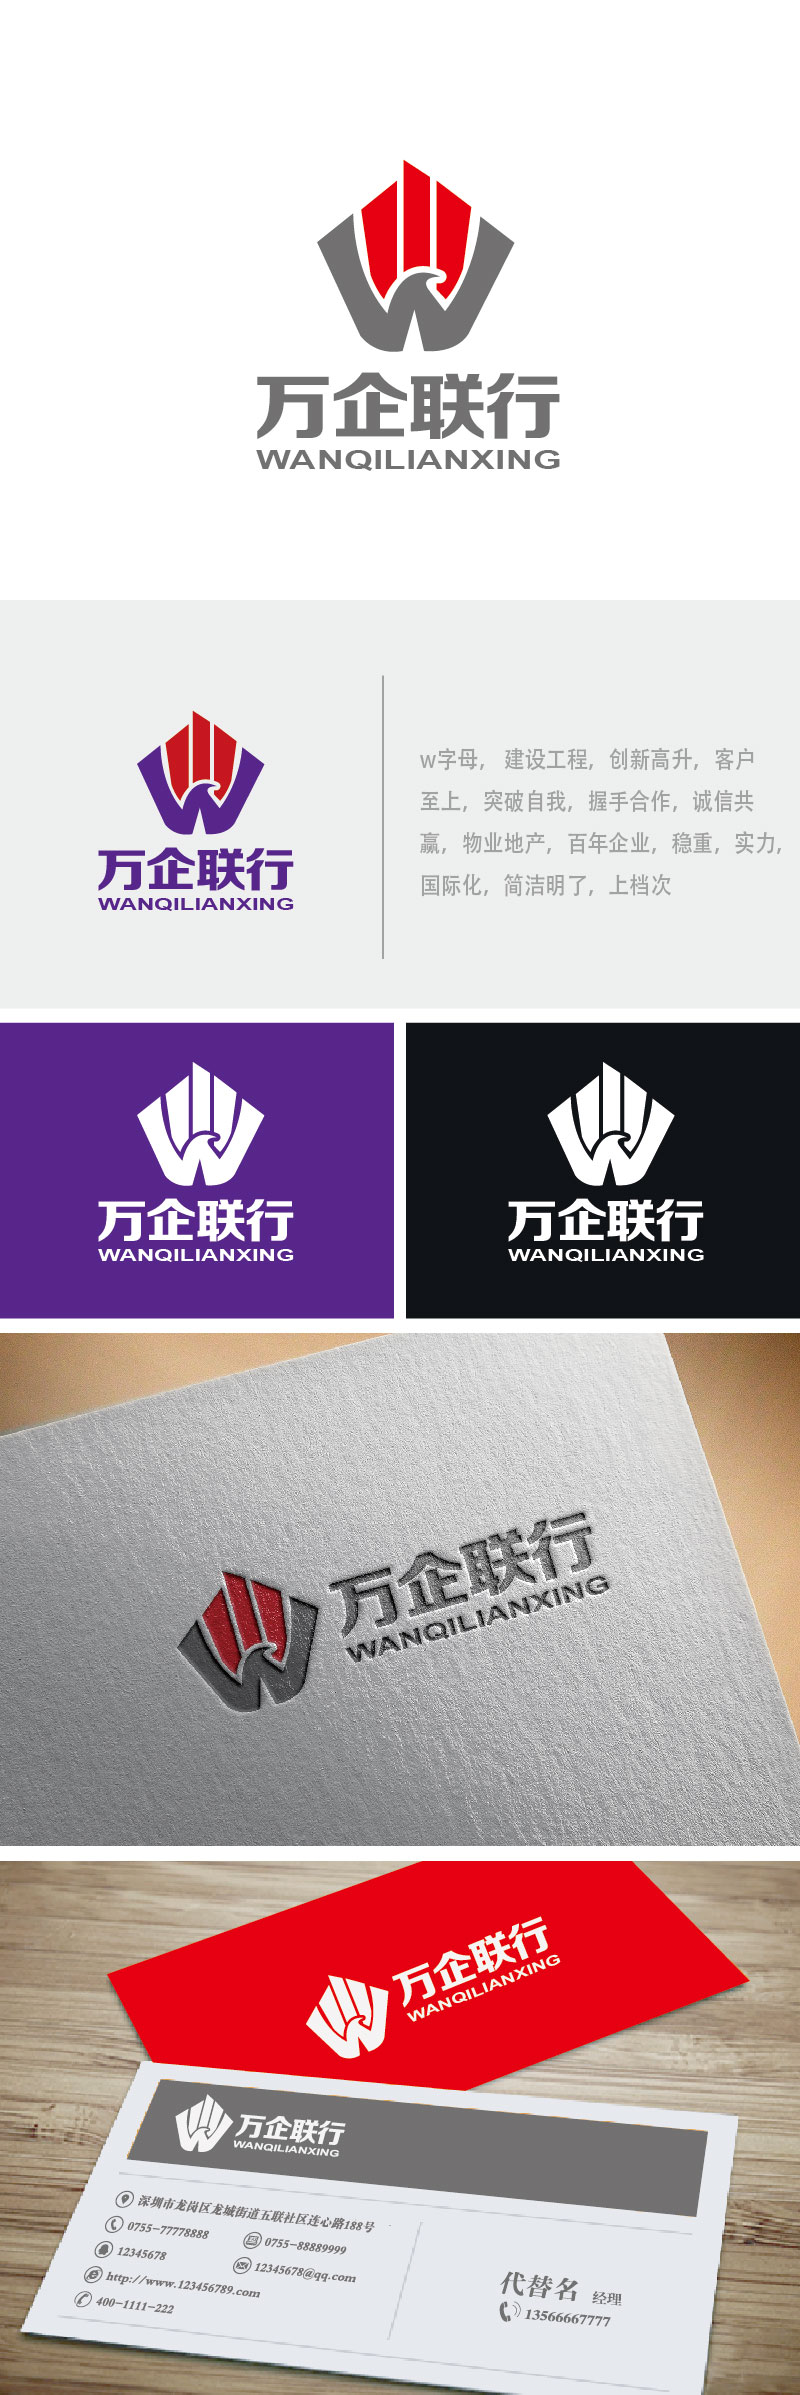 李贺的万企联行物业服务有限公司logo设计